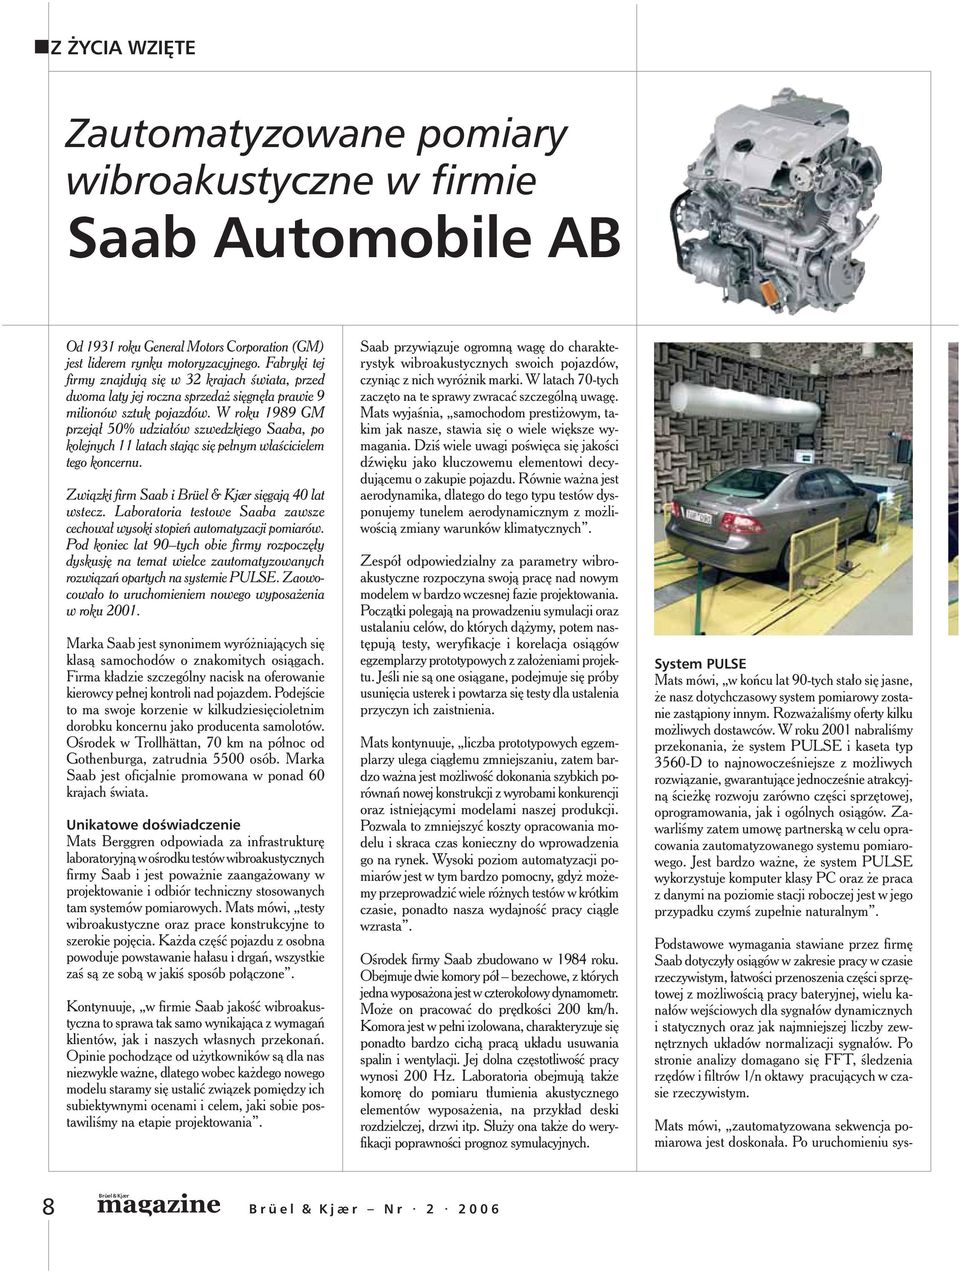 W roku 1989 GM prze jął 50% udziałów szwedzkiego Saaba, po kolejnych 11 latach stając się pełnym właścicielem tego koncernu. Związki firm Saab i sięgają 40 lat wstecz.